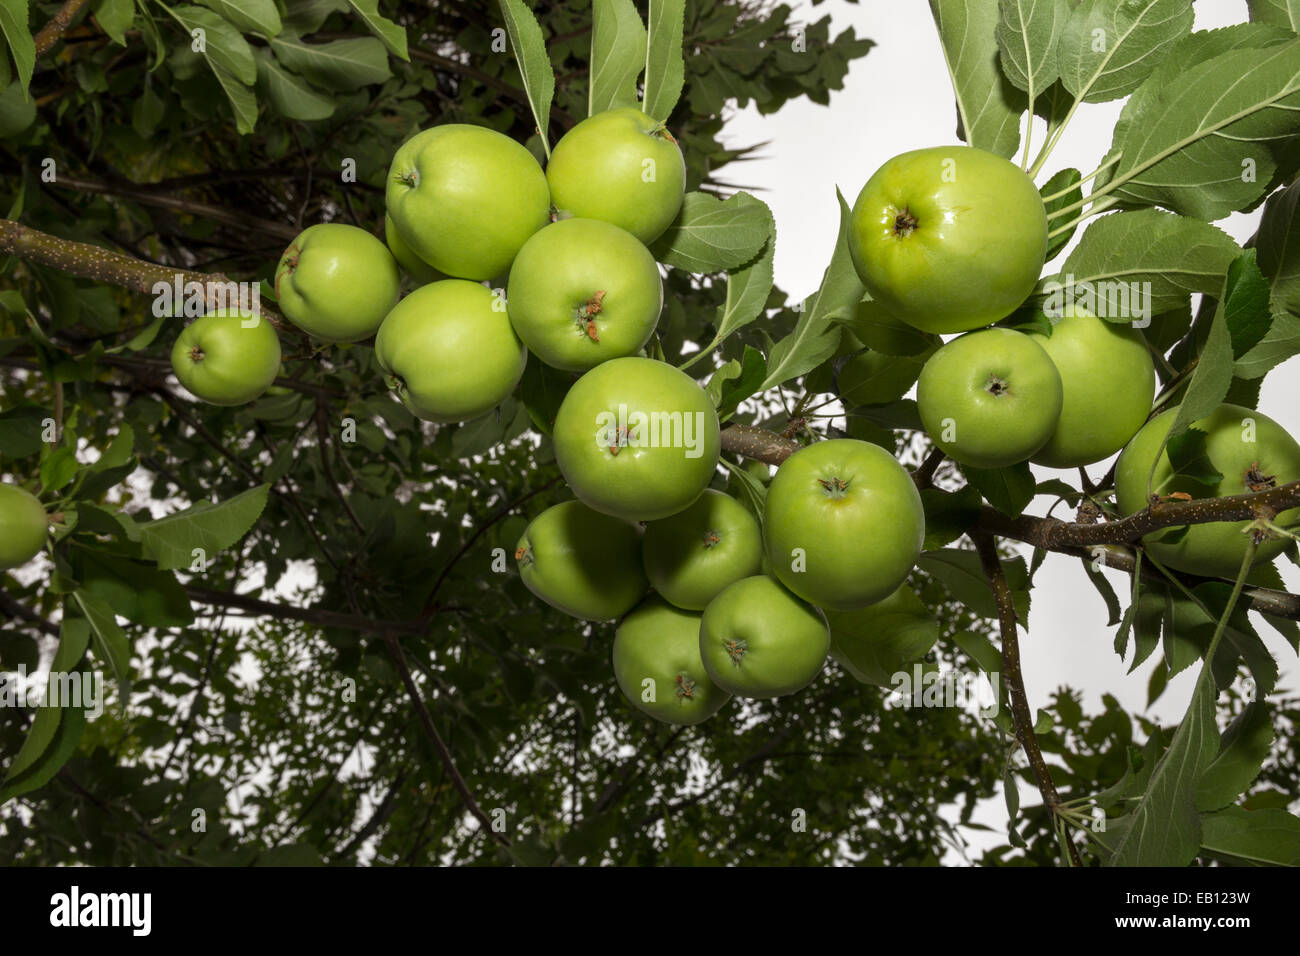 Manzana Verde, manzana verde, manzana, manzanas, Apple tree, huerto de manzanas, Malus domestica, Novato, Marin County, California, Estados Unidos, América del Norte Foto de stock